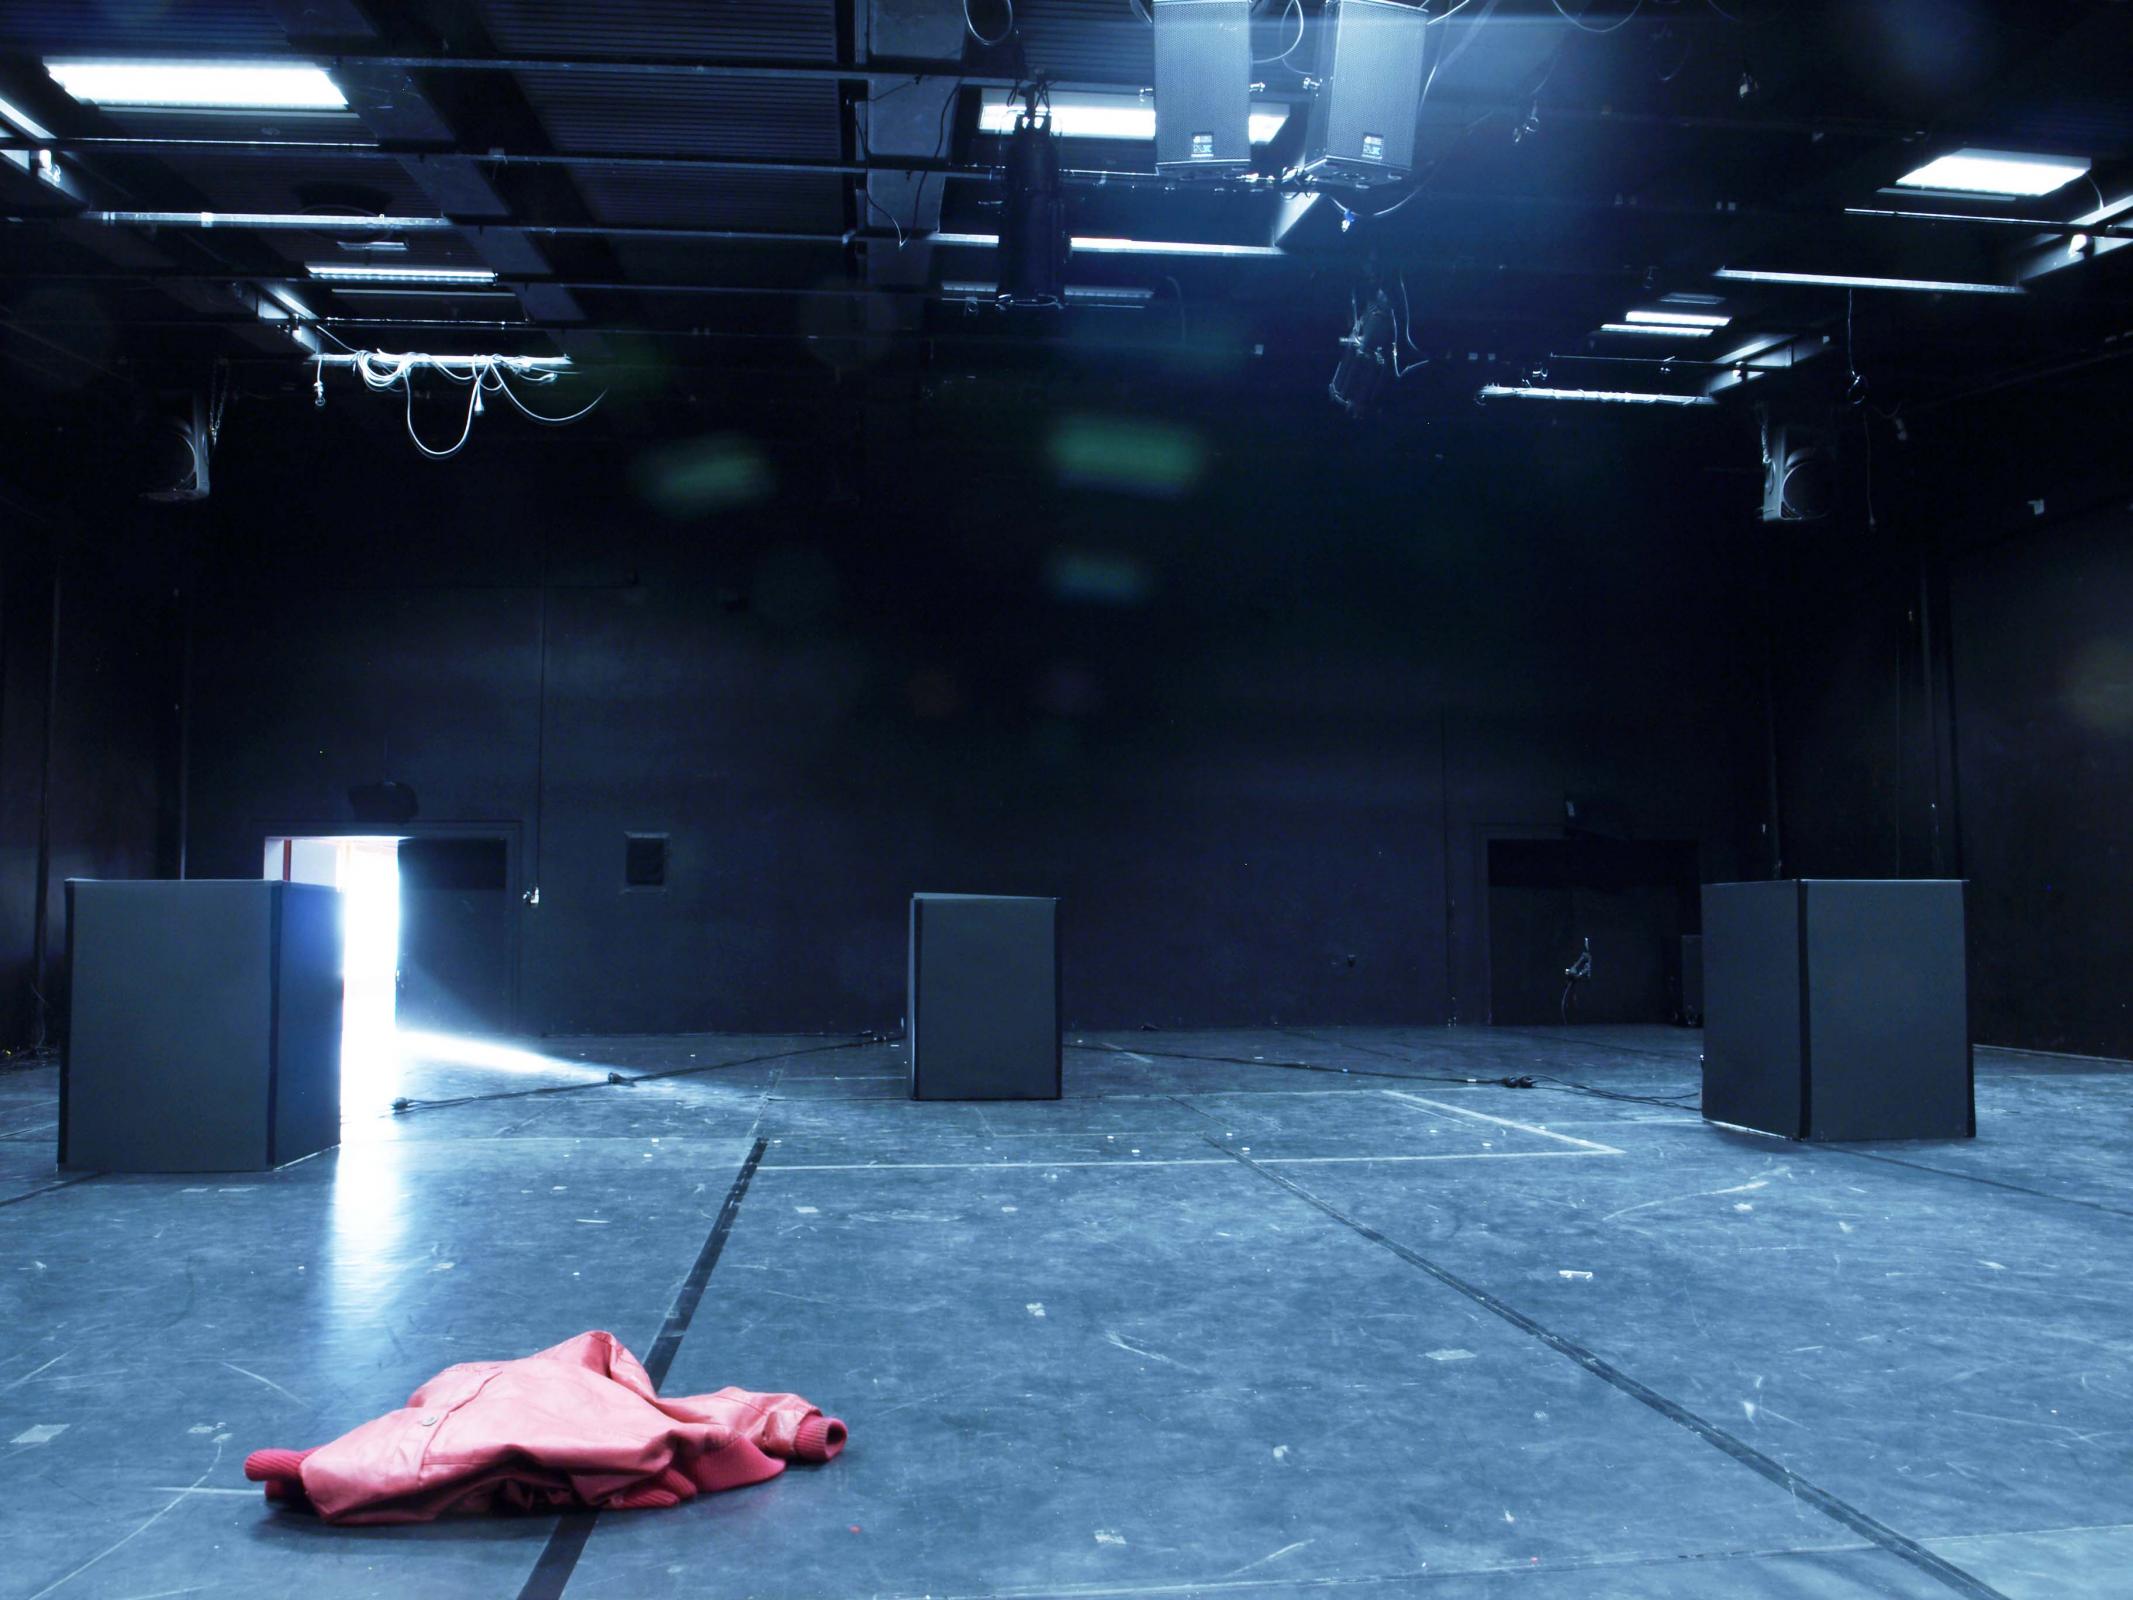 Auf einer Bühne stehen drei schwarze Kuben am Bildrand und in der Mitte. Eine rote Jacke liegt im Vordergrund